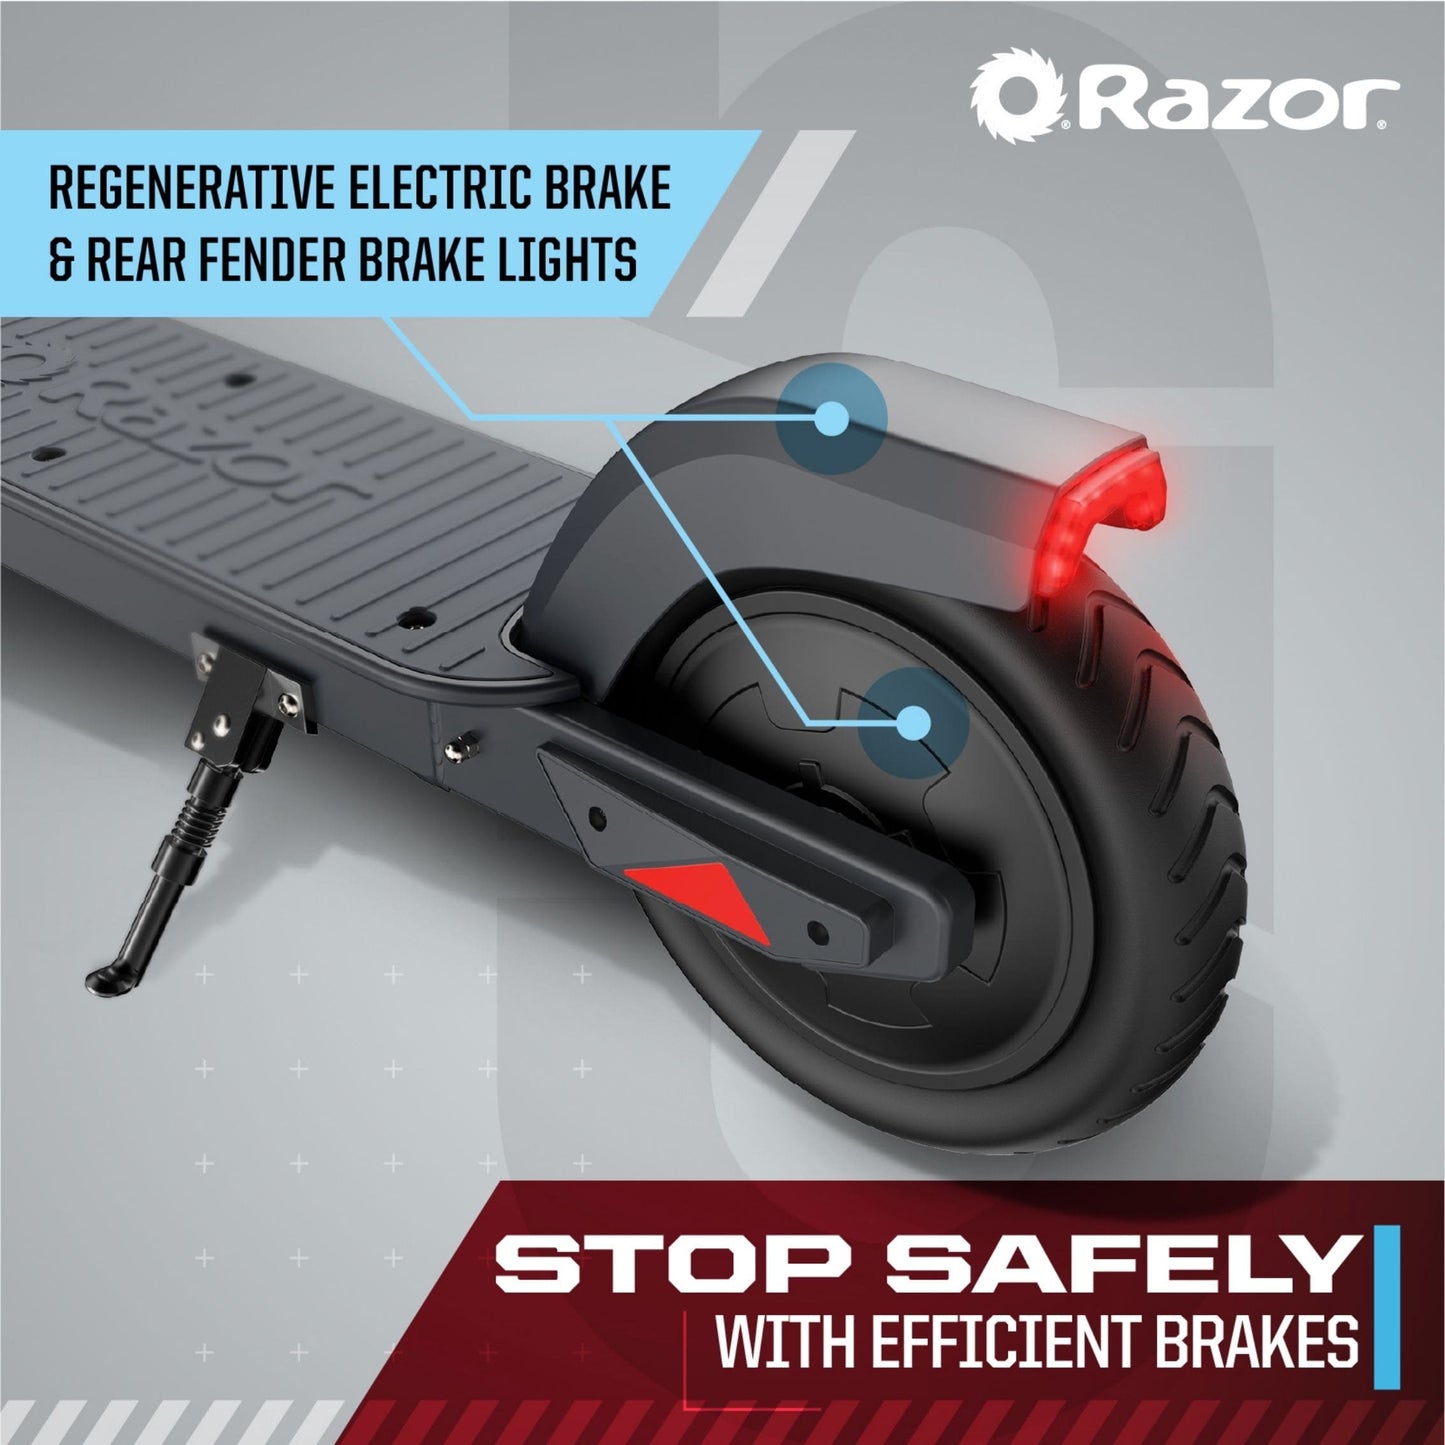 Razor C25 Electric Scooter